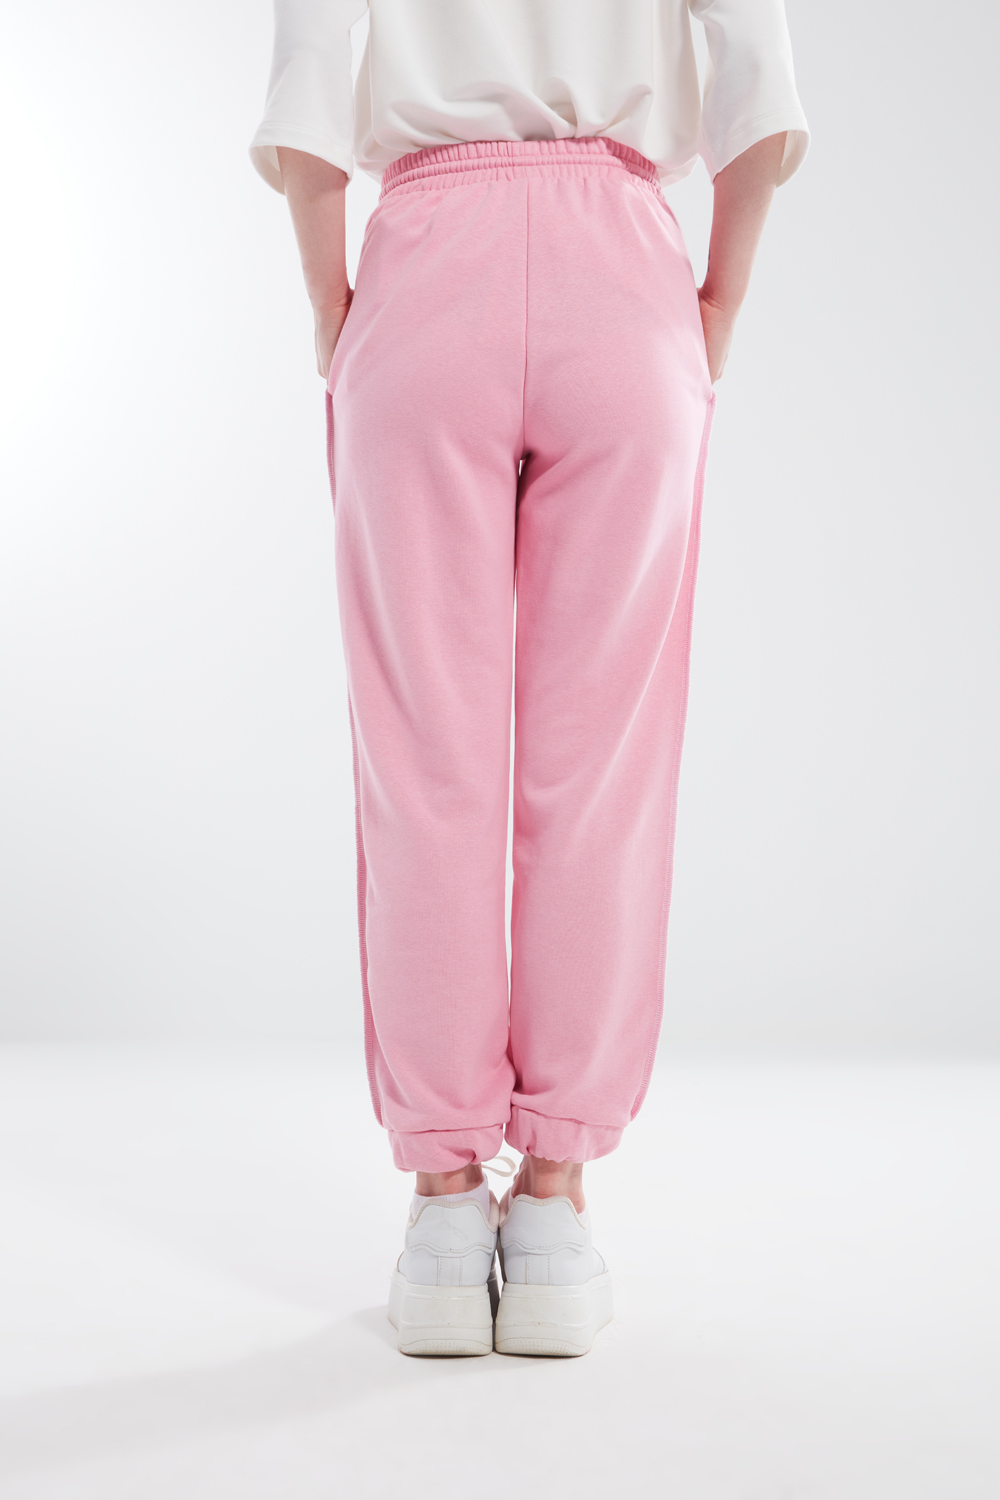 Comfy Stitched Pink Sweatpants